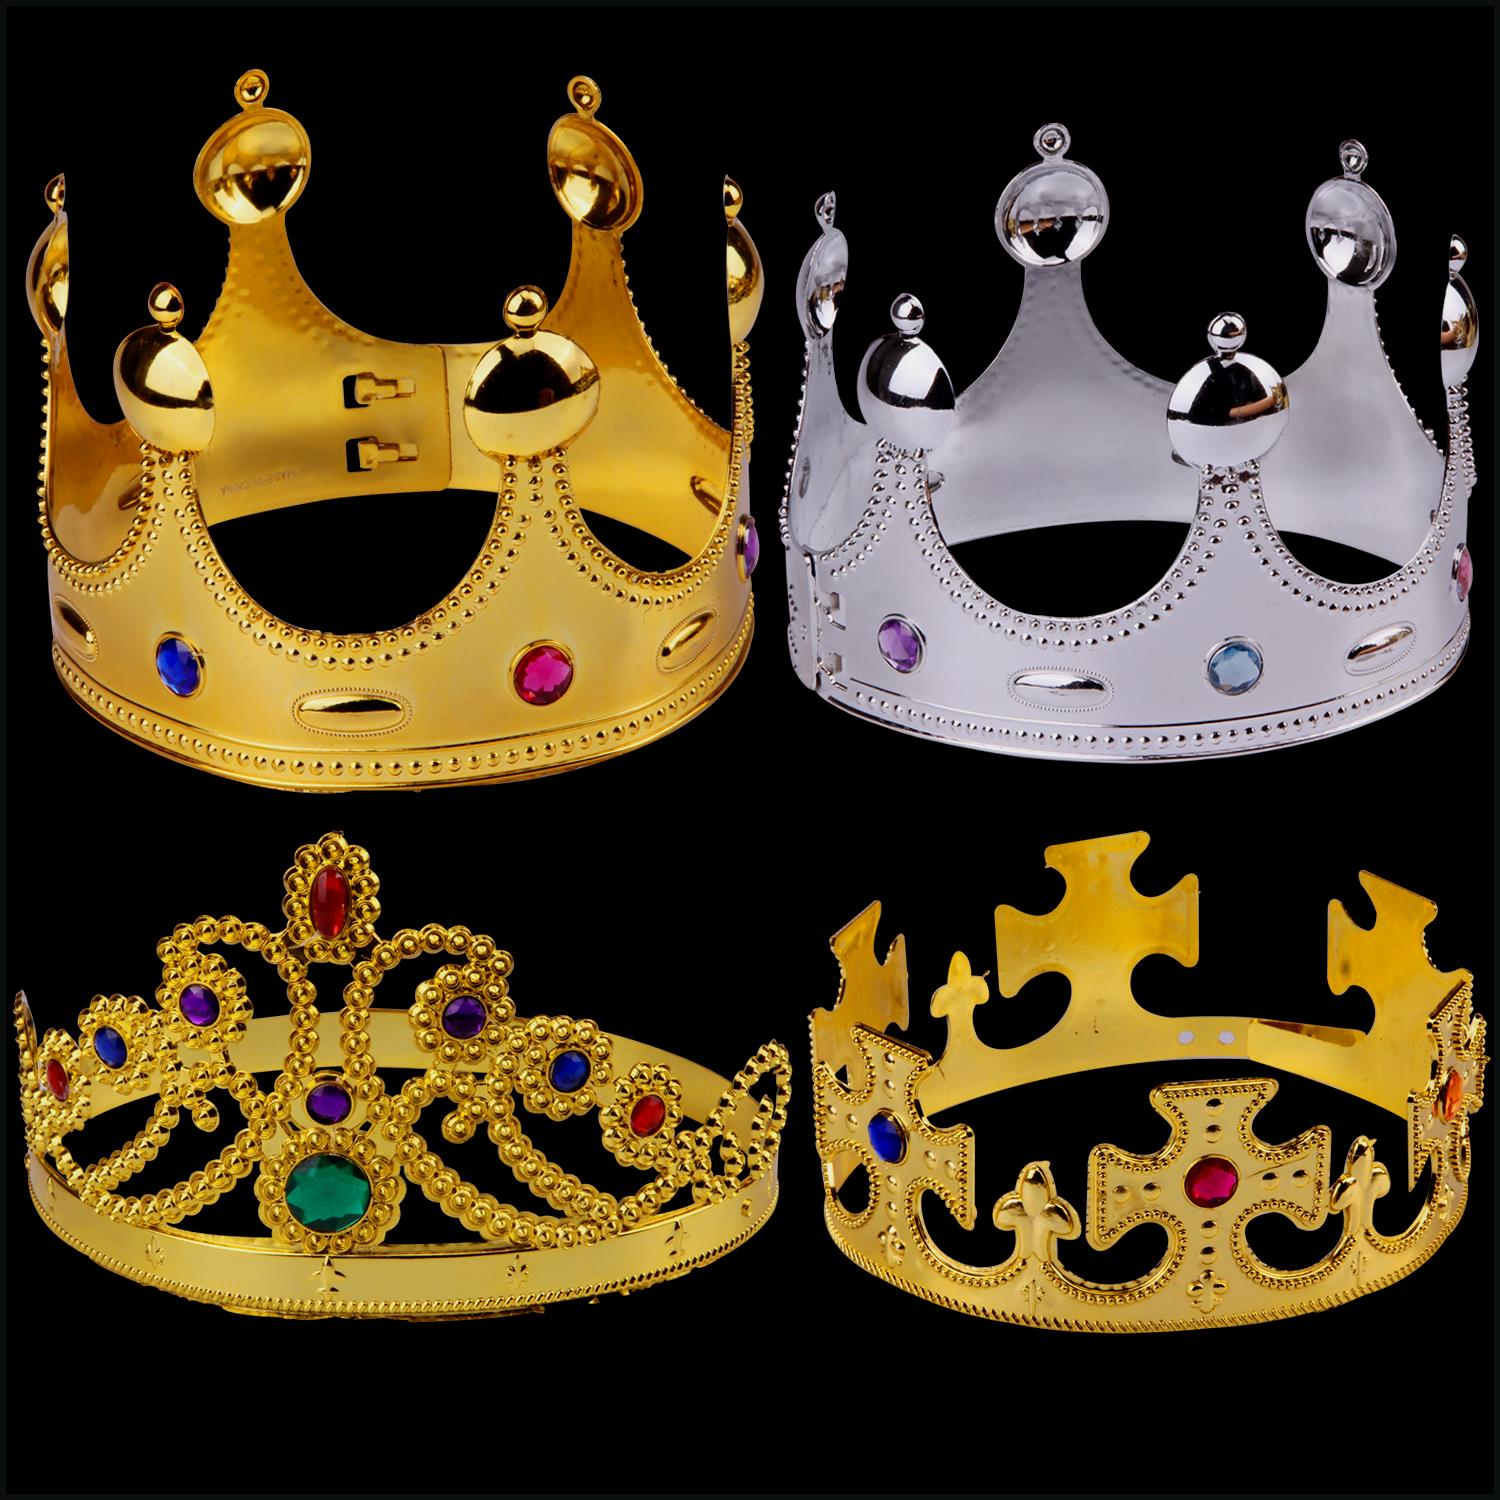 国王皇冠万圣节儿童舞会装扮电镀塑料皇冠权杖派对用品生日头饰帽